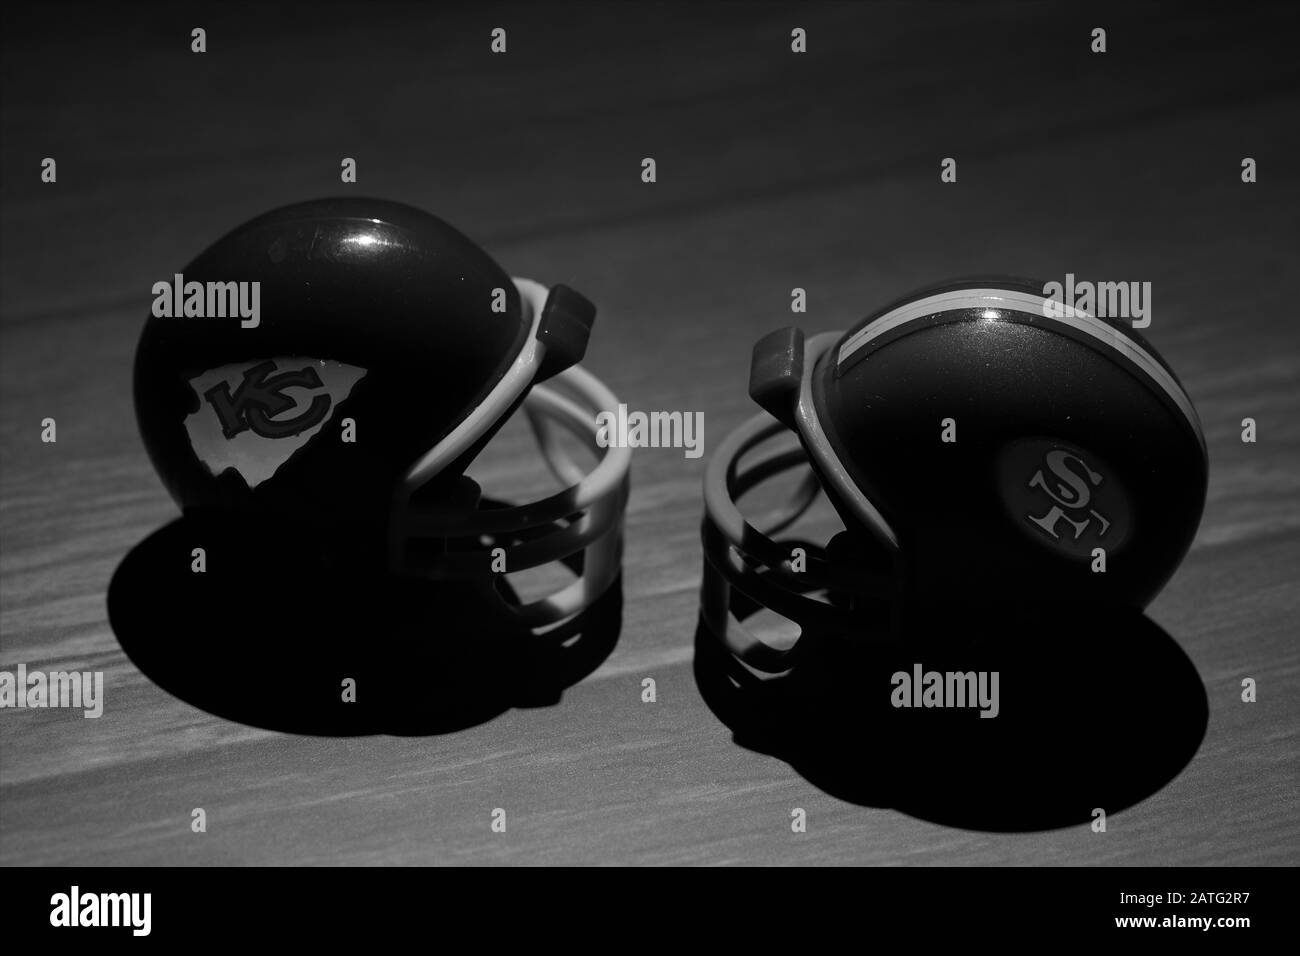 Helme der NFL Super Bowl LIV Teams, der Kansas City Chefs und der San Francisco 49ers in schwarz-weiß auf Holzhintergrund Stockfoto